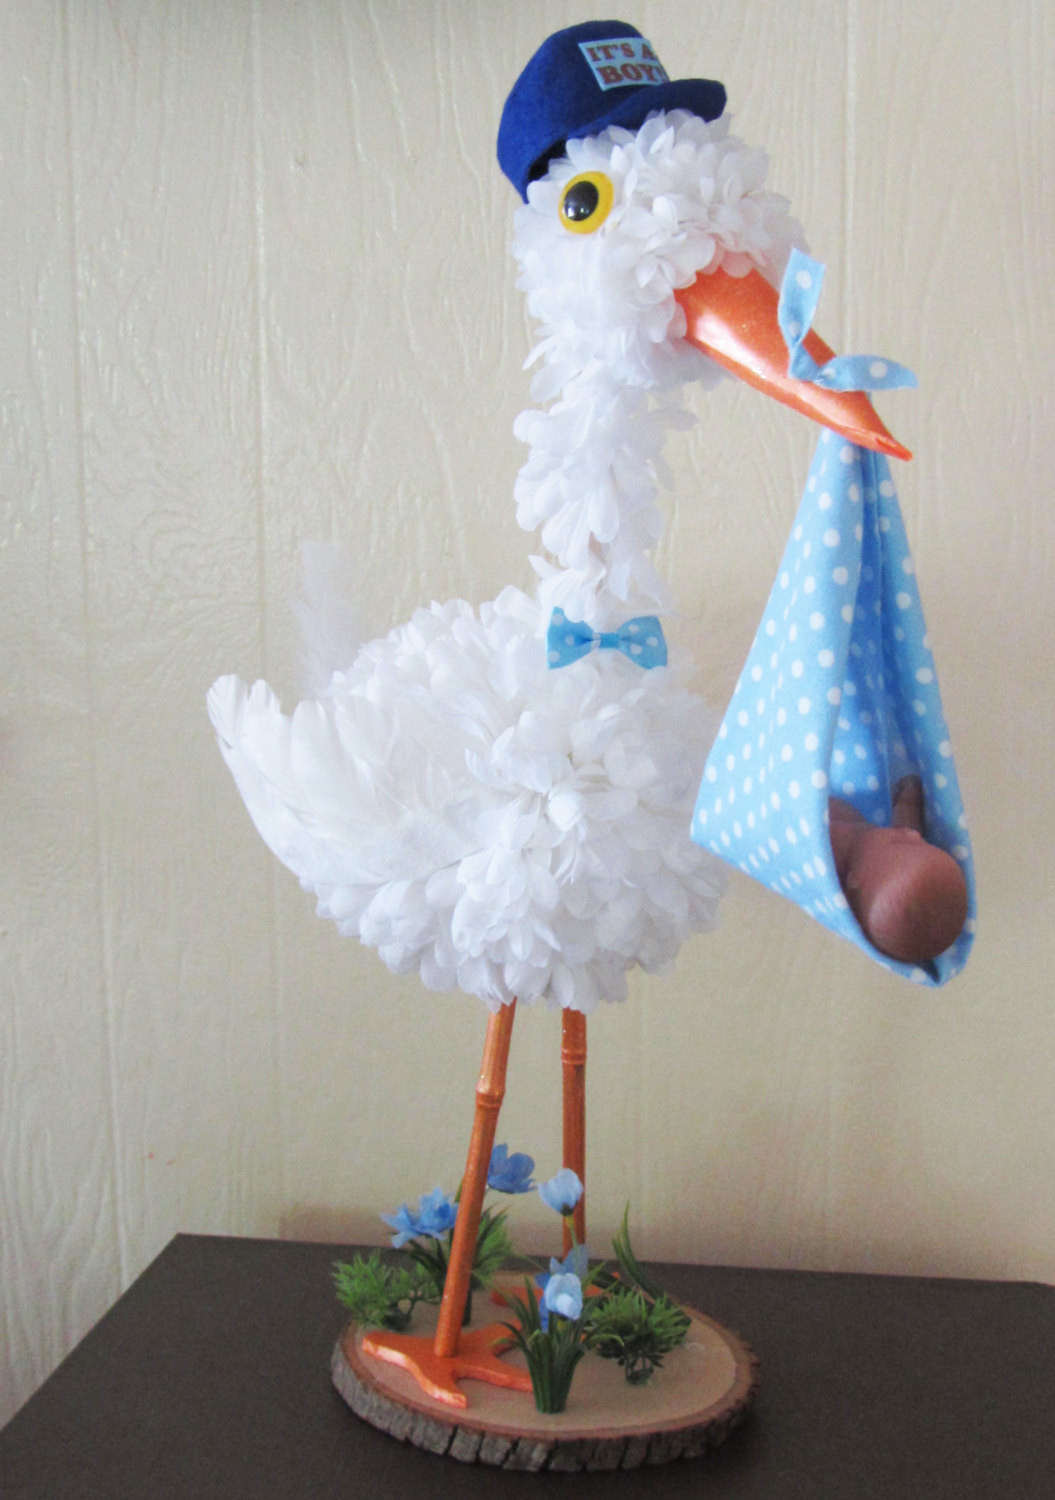 DIY Baby Shower Centerpieces Boy
 Stork Centerpiece Baby boy stork centerpiece unique baby